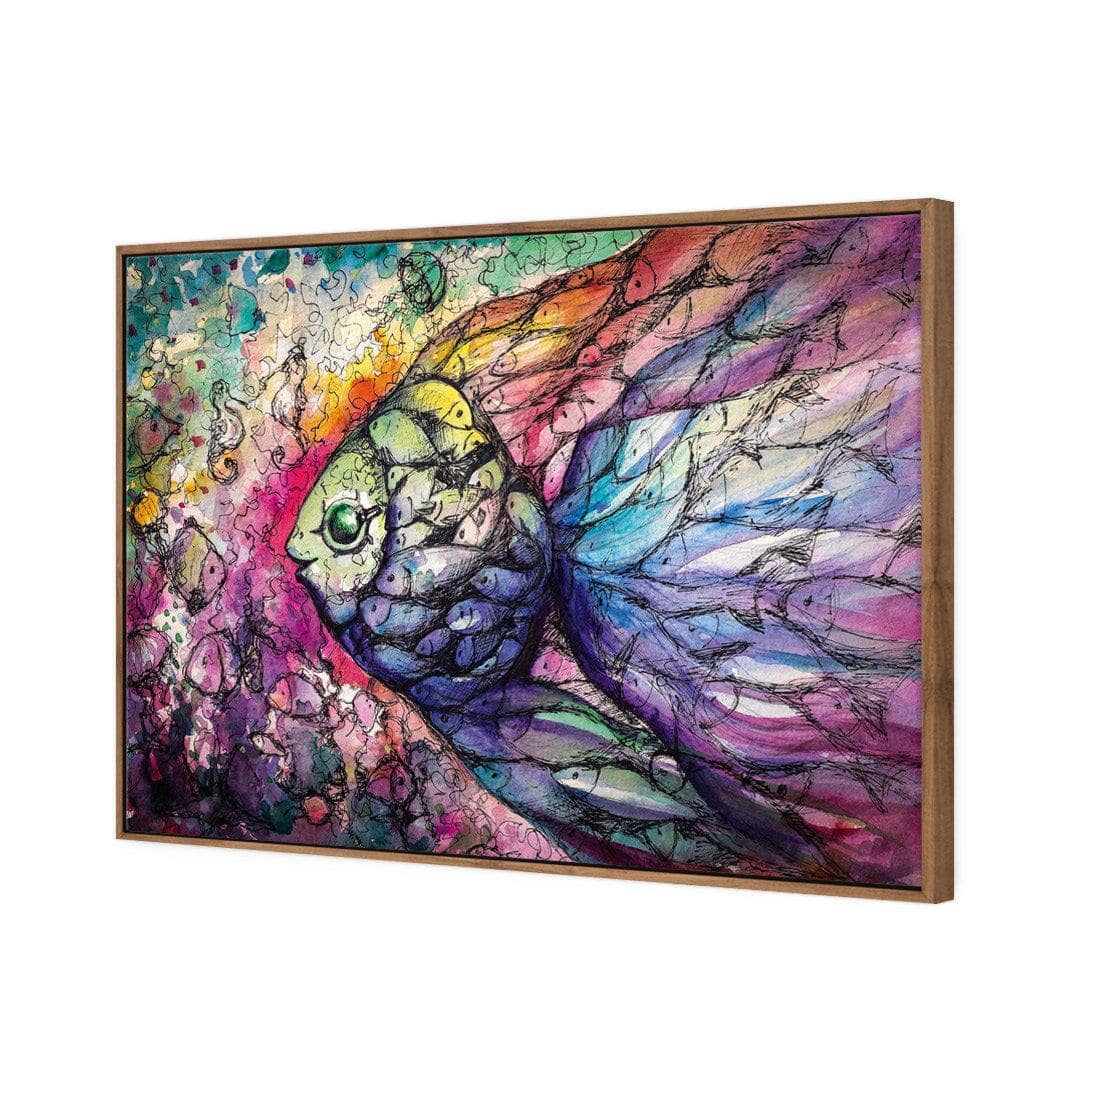 Scribblefish Canvas Art-Canvas-Wall Art Designs-45x30cm-Canvas - Natural Frame-Wall Art Designs